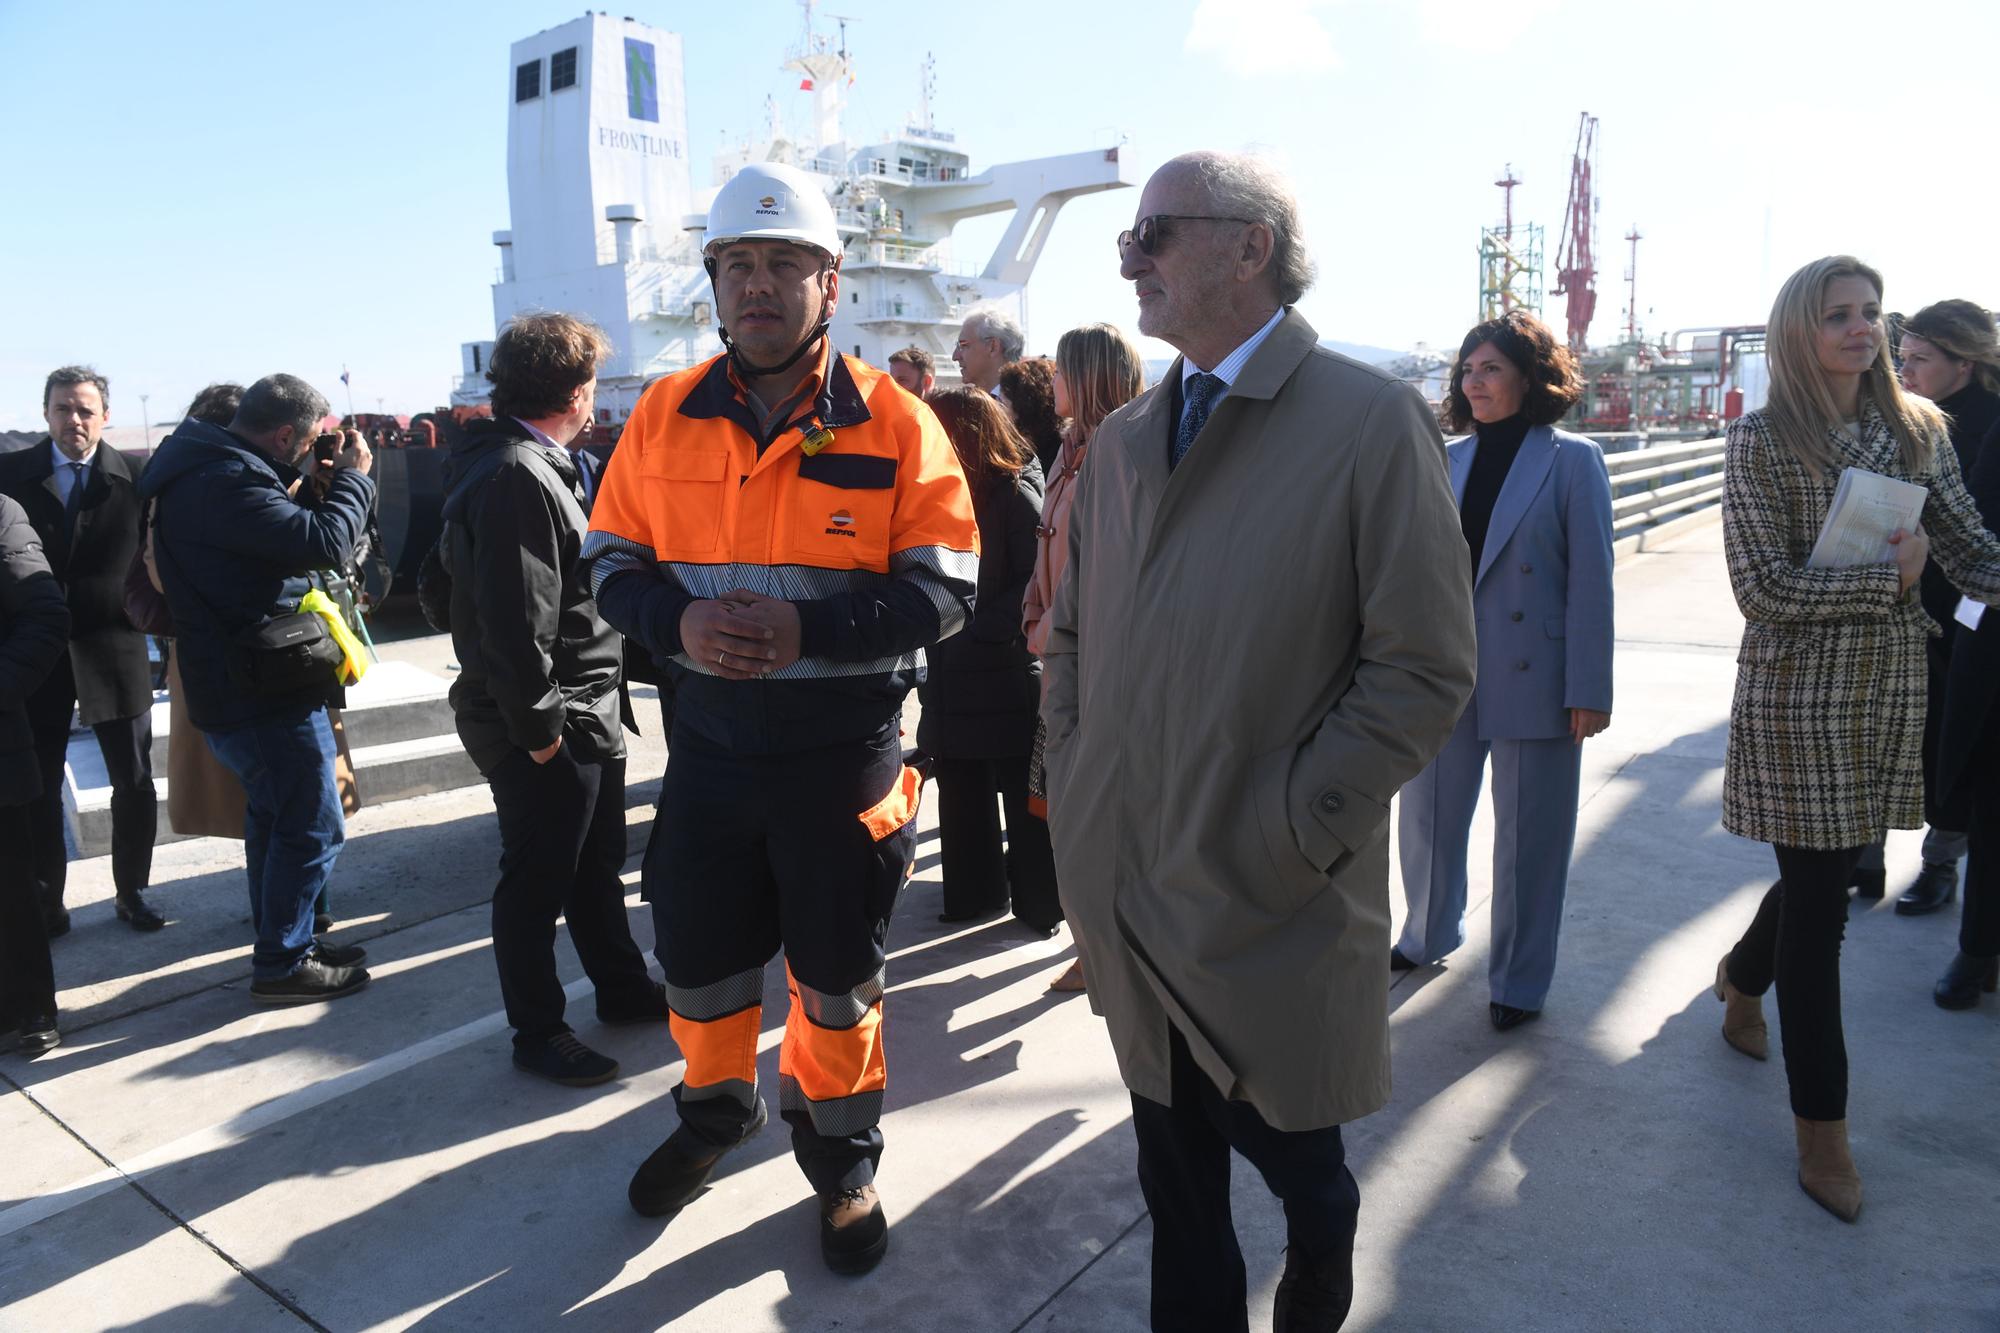 Inauguración de las instalaciones de Repsol en el puerto exterior de punta Langosteira.